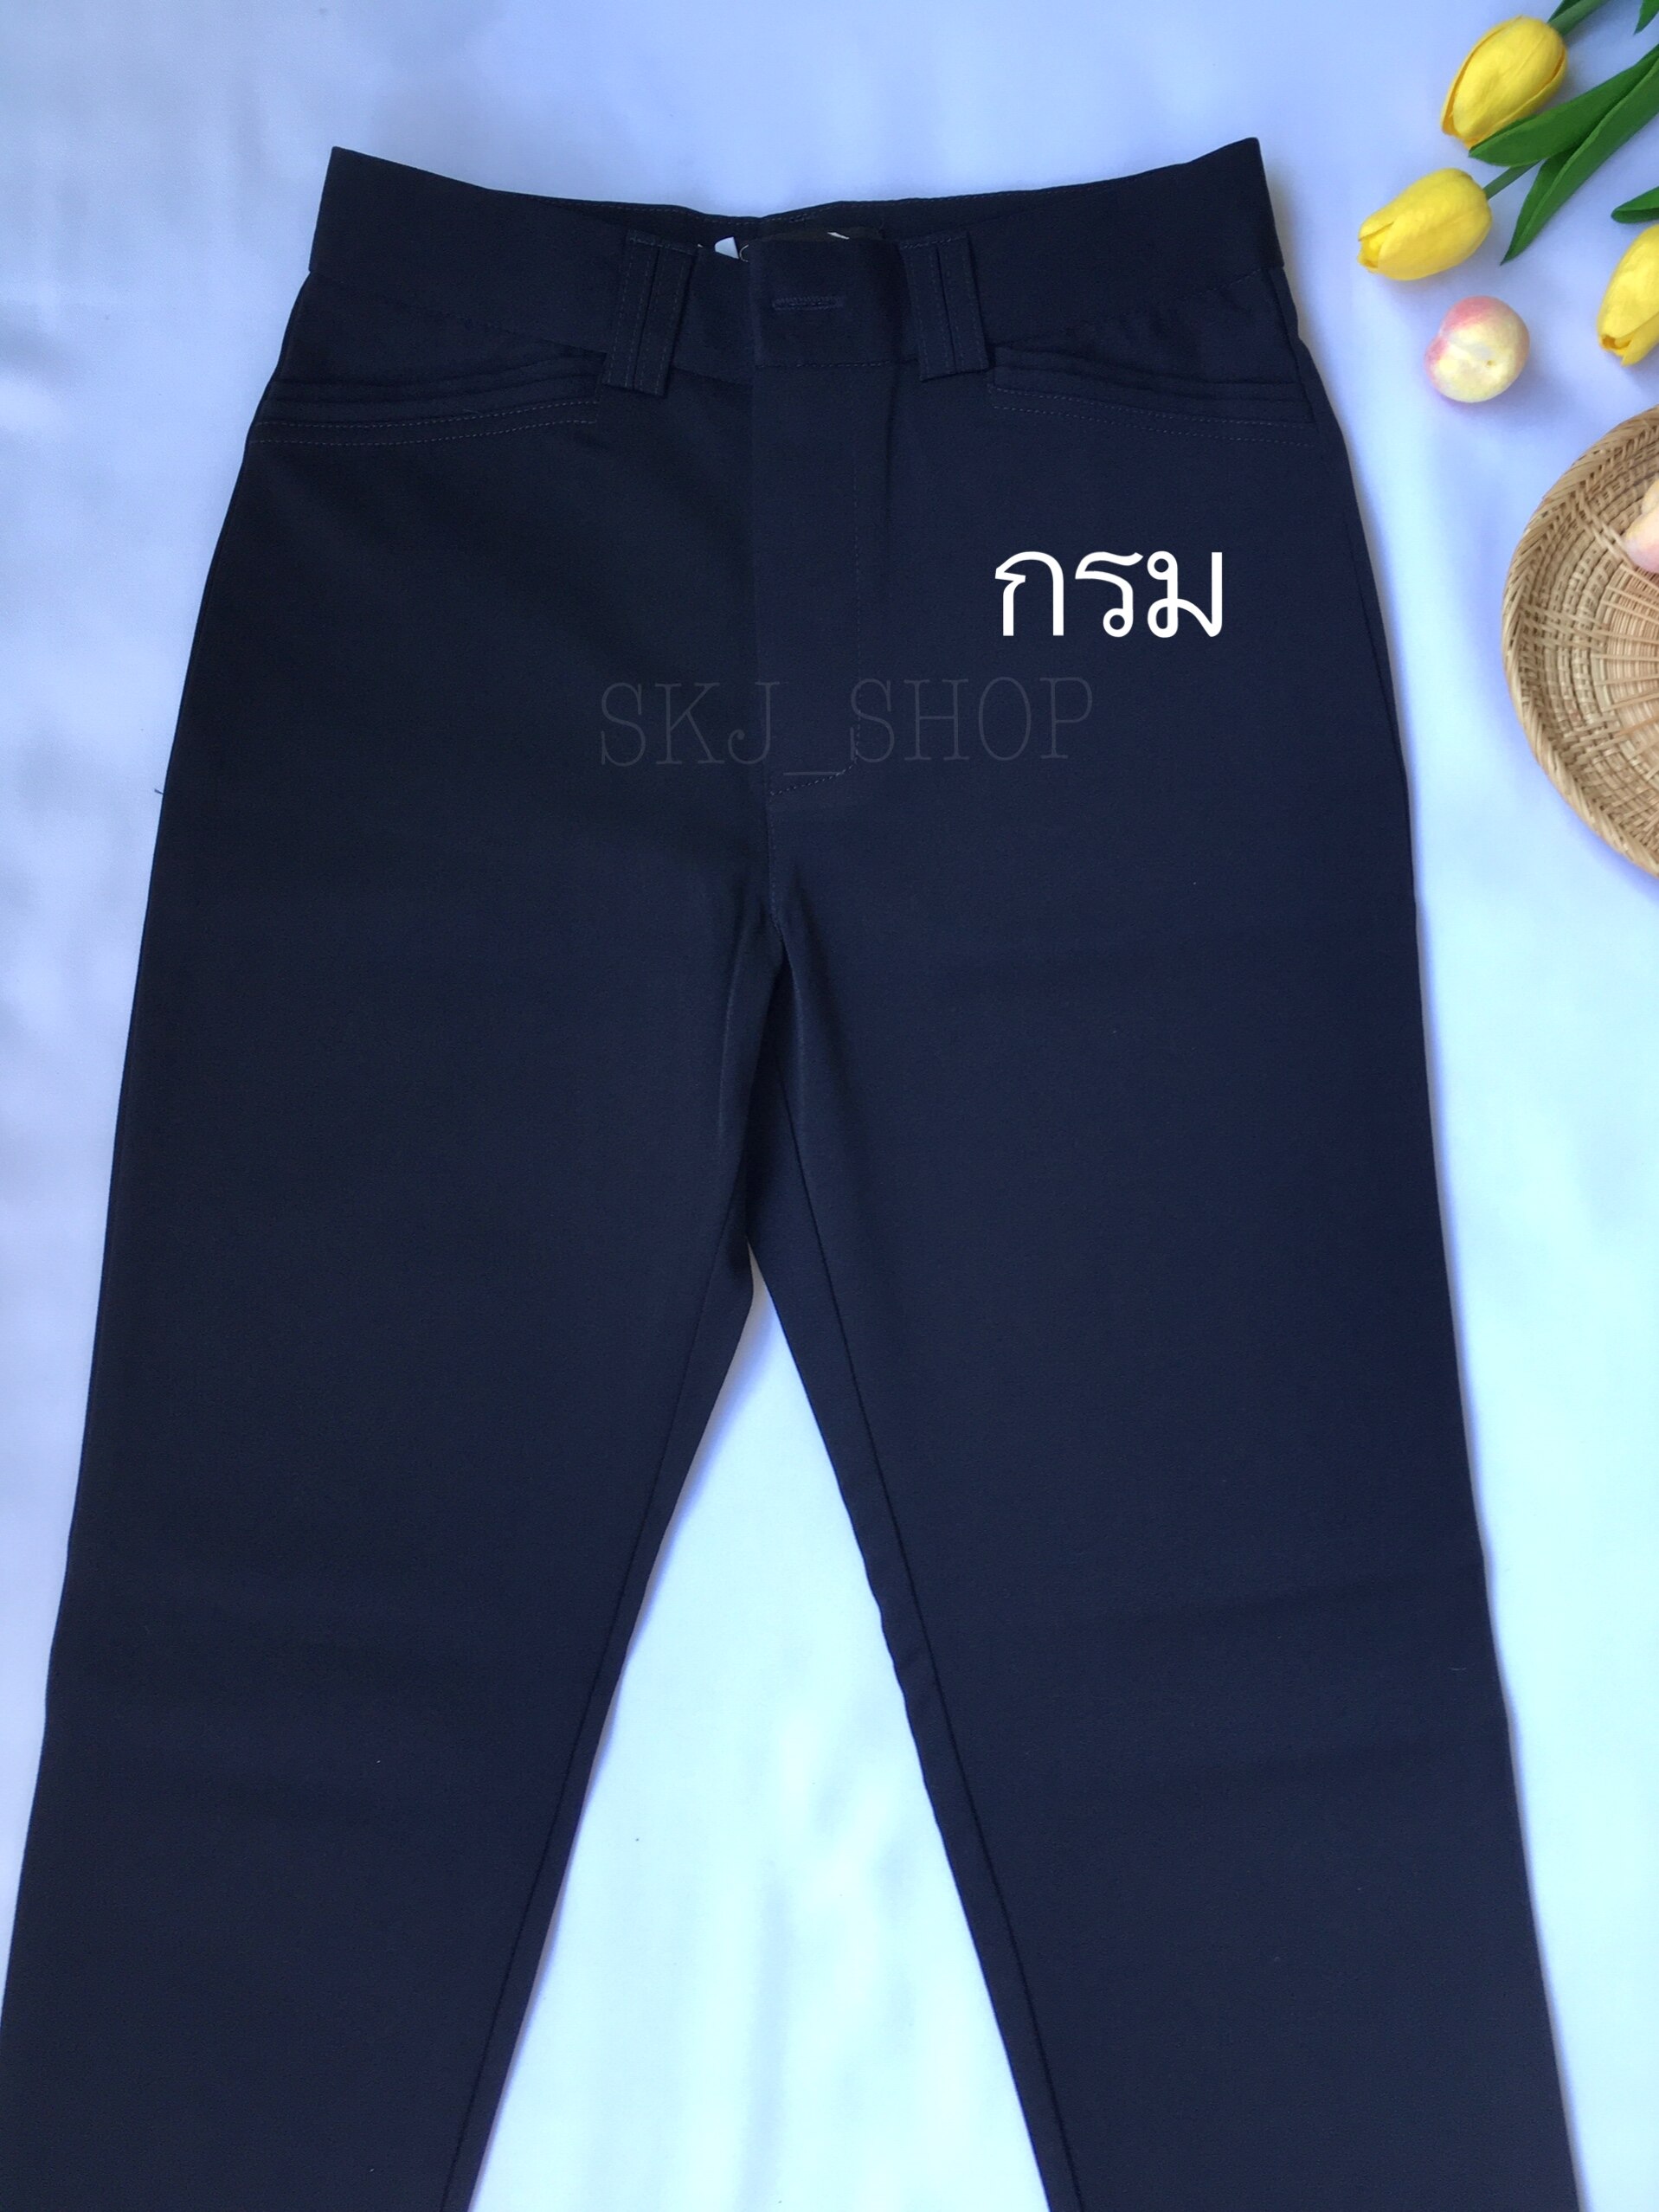 กางเกงทำงานเอวสูงทรงกระบอกเล็กผ้านาโน กางเกงWinner กางเกงสแล็คผู้หญิง กางเกงผ้าลื่น กางเกงขายาว กางเกงขาเดฟ กางเกงทางการ กางเกงฮานาโกะ